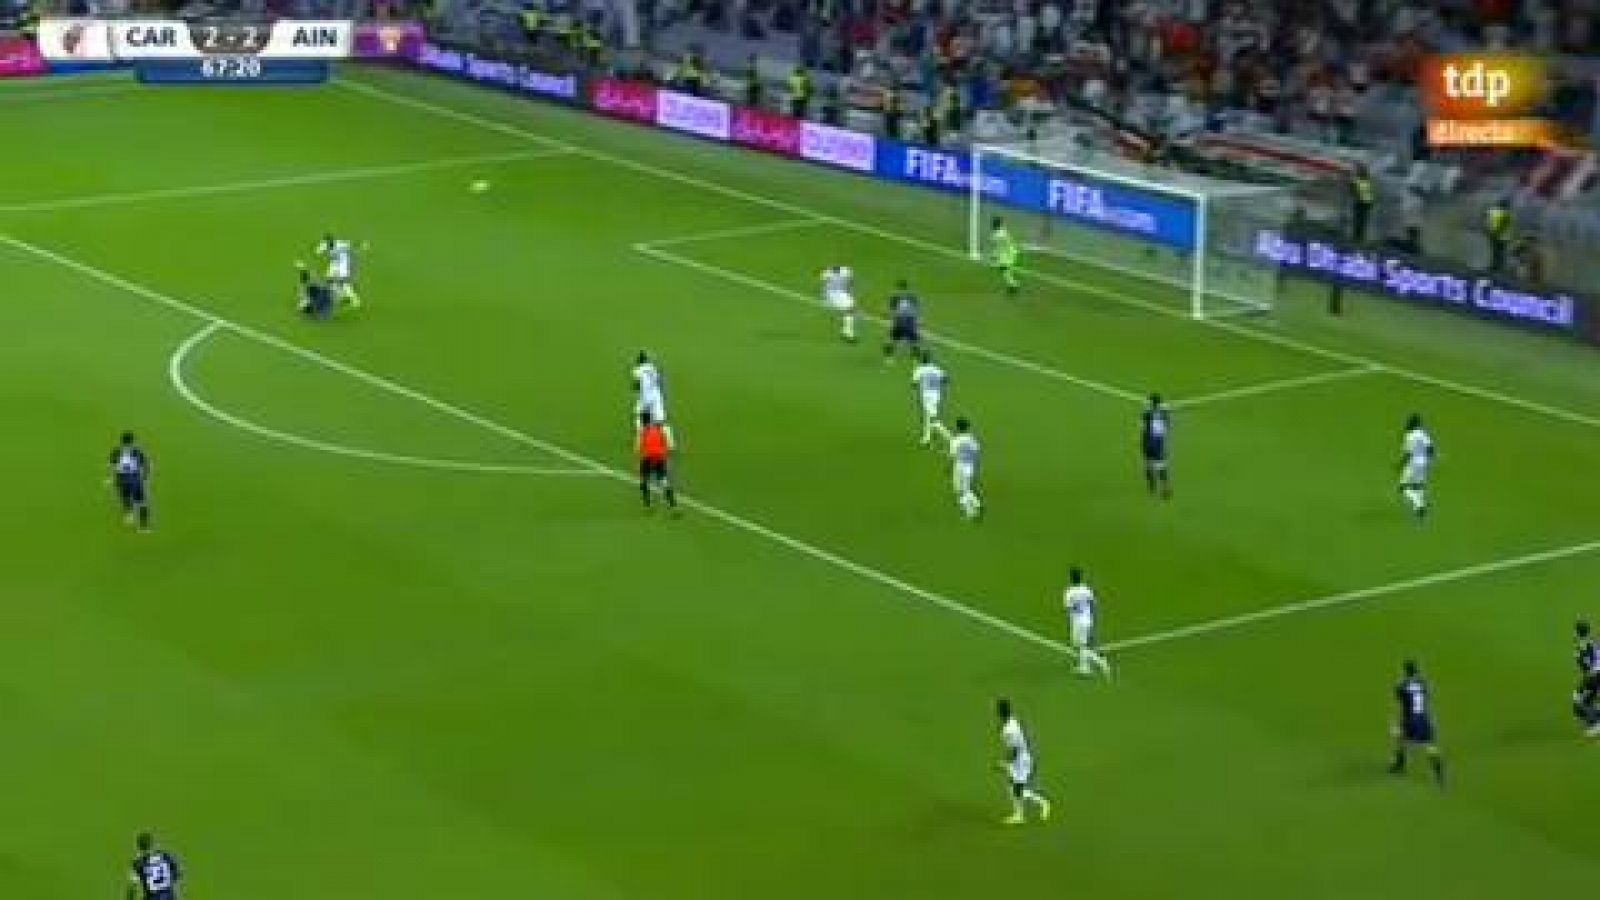 Mundialito 2018: River 2-2 Al Ain, penalti fallado por Pity